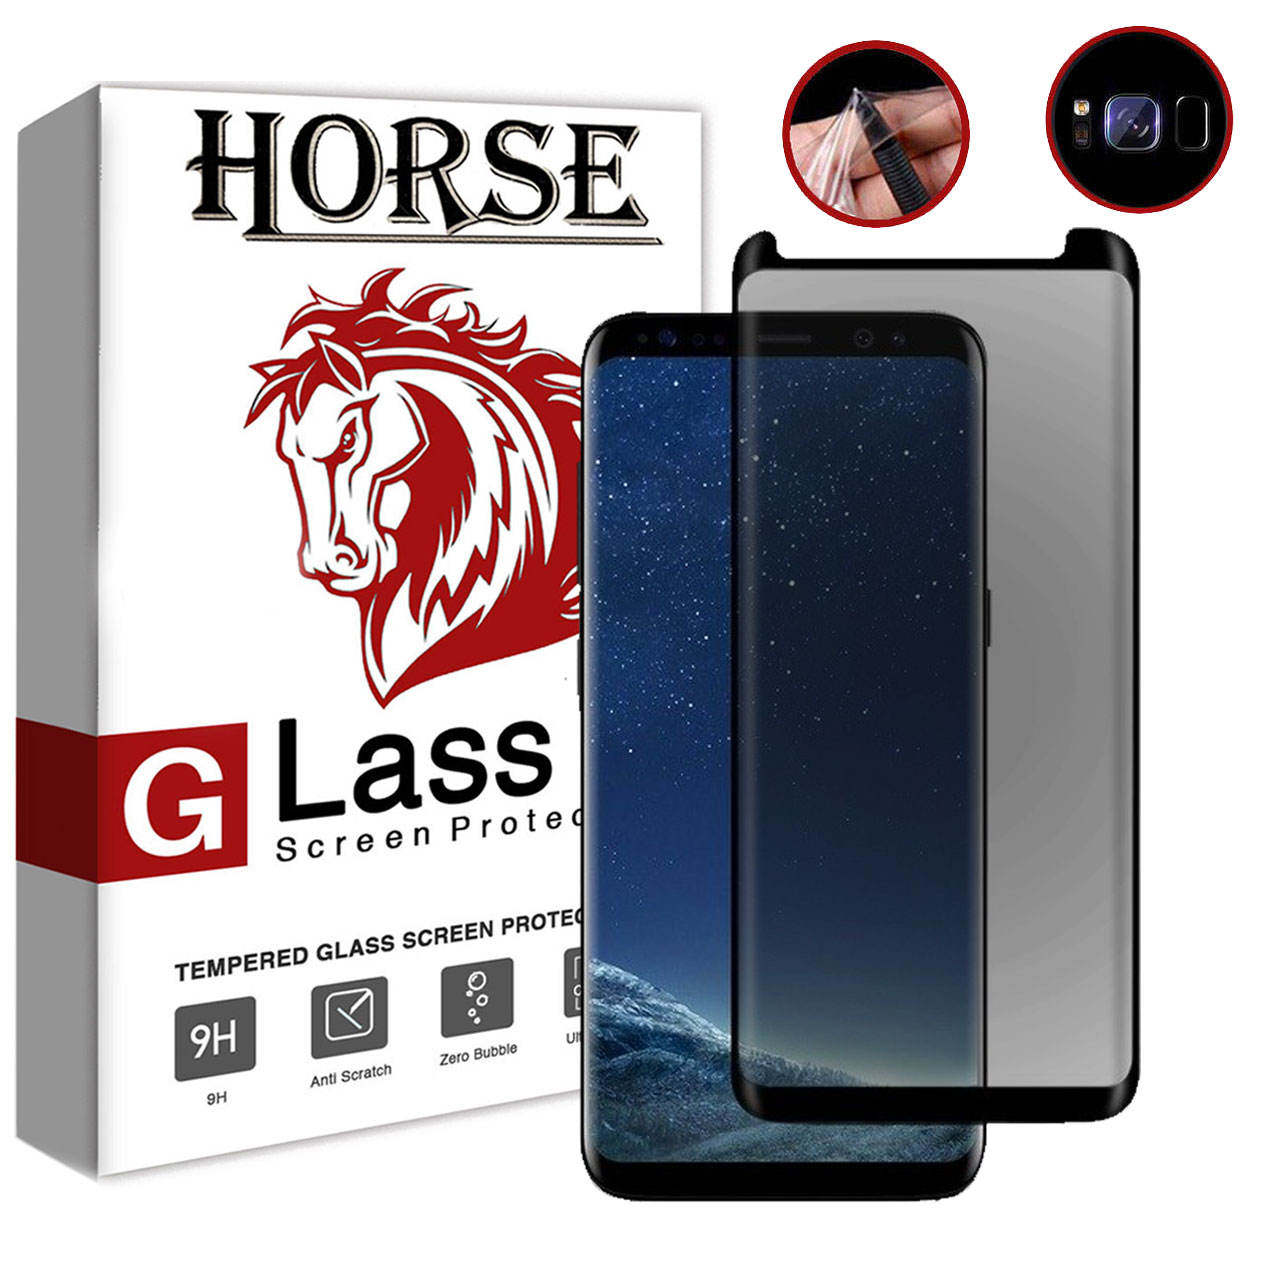 گلس محافظ صفحه نمایش گوشی موبایل هورس-Horse محافظ نمایش نانووحریم شخصی6D برای گوشی Galaxy S9 Plusمجموعه2عددی